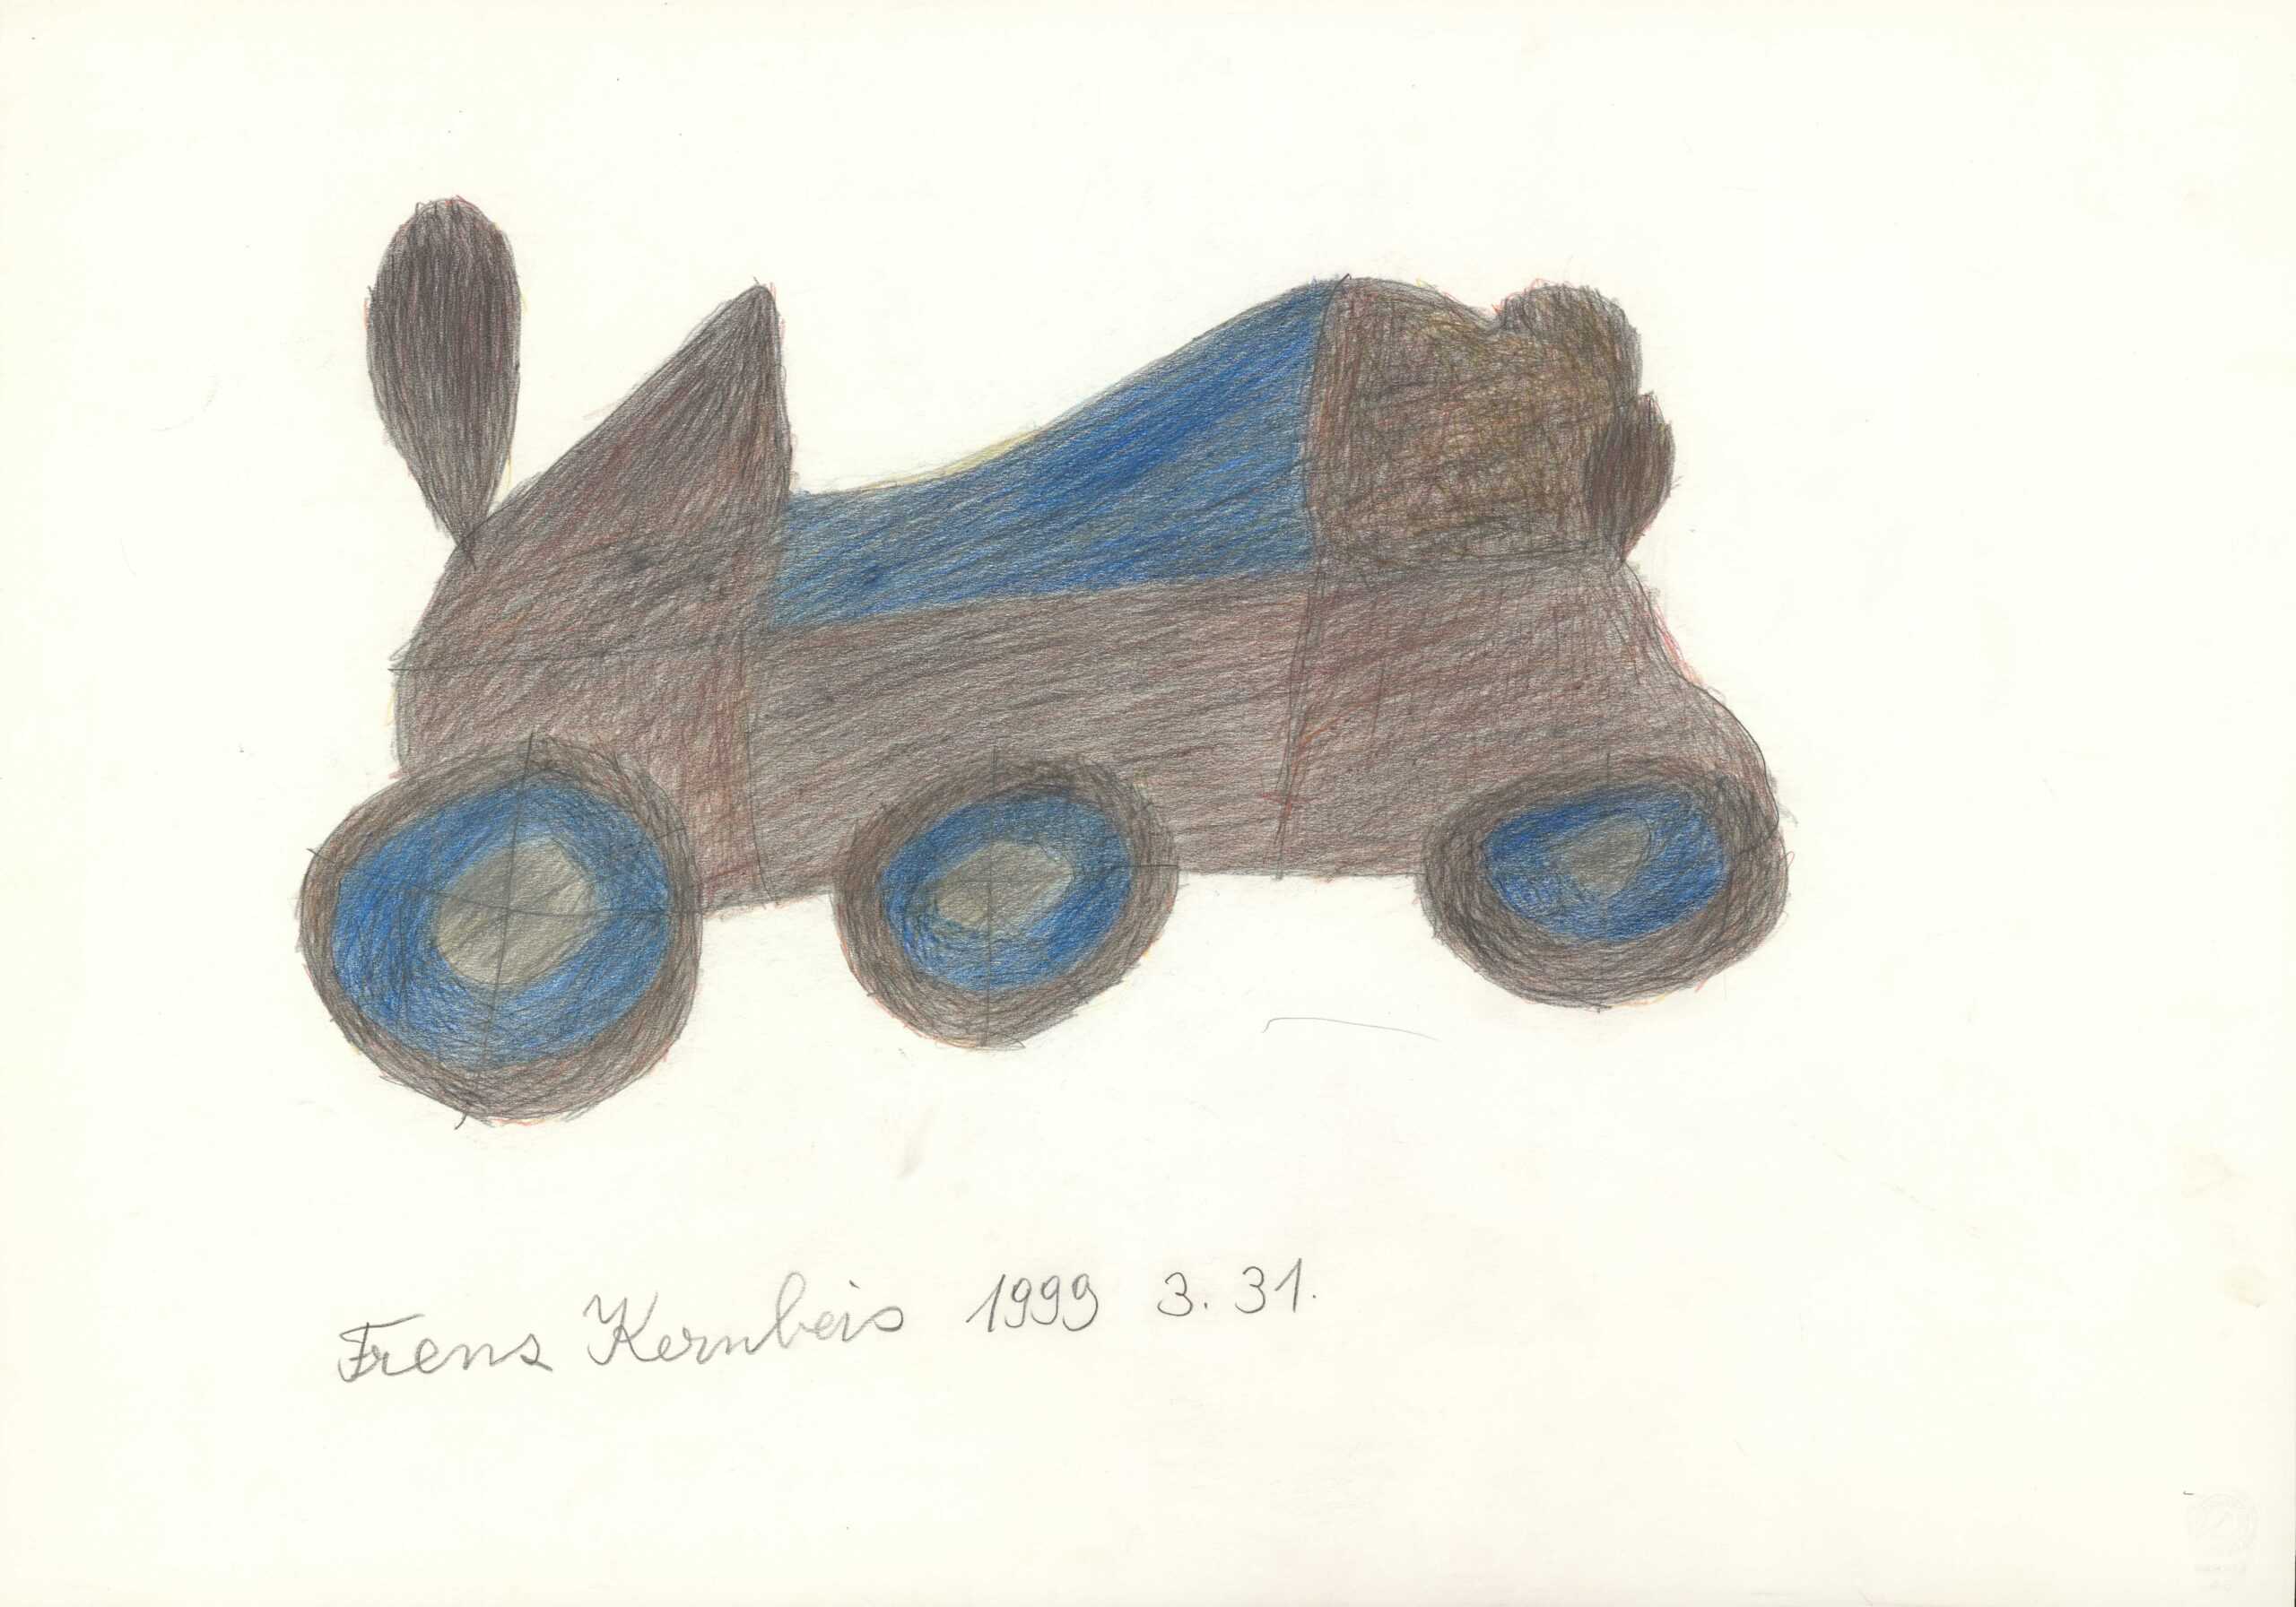 kernbeis franz - Wagen / Carriage